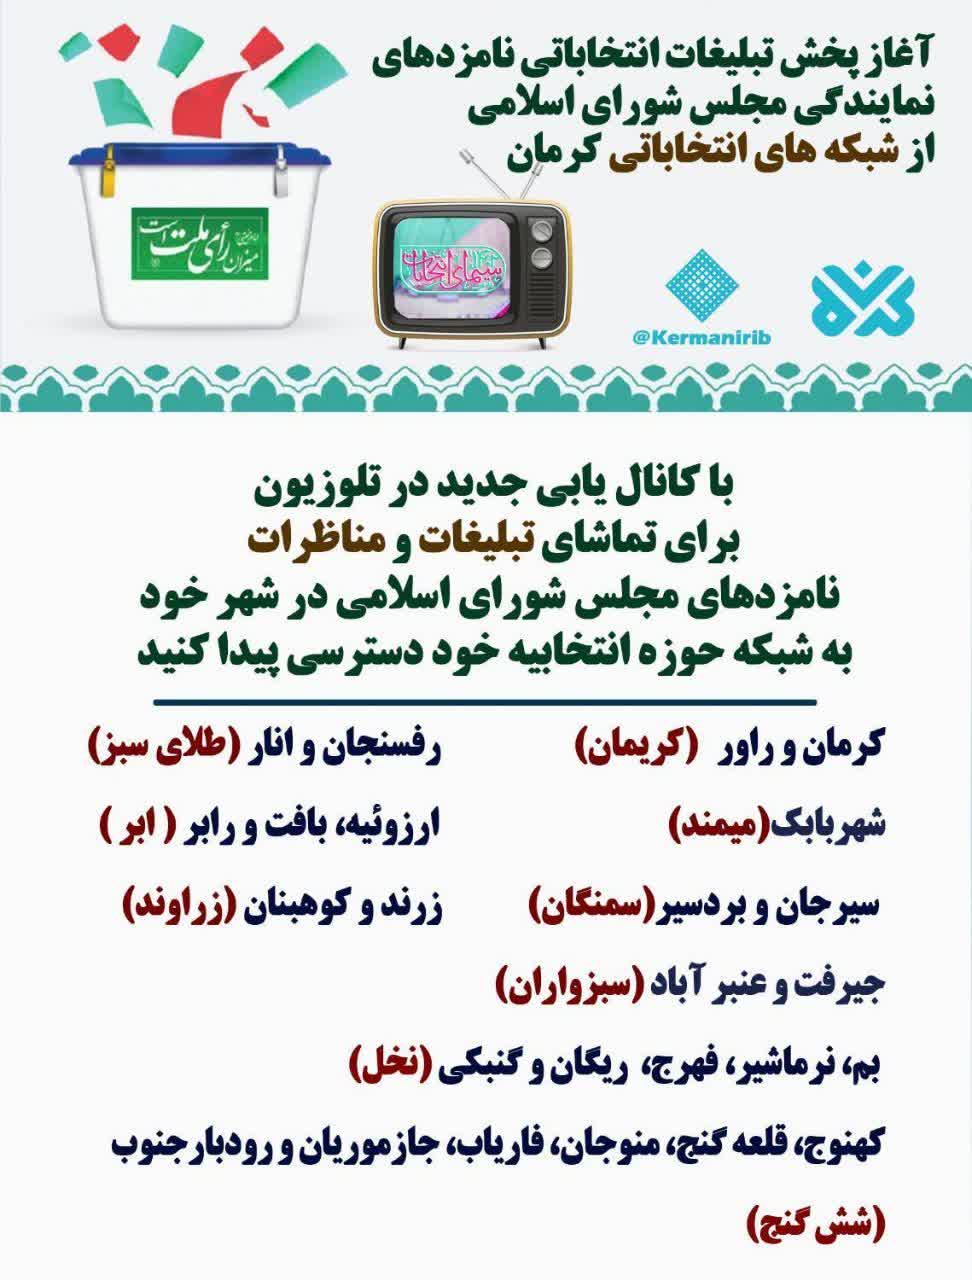 آغاز پخش تبلیغات انتخاباتی نامزدهای نمایندگی مجلس از شبکه های انتخاباتی کرمان